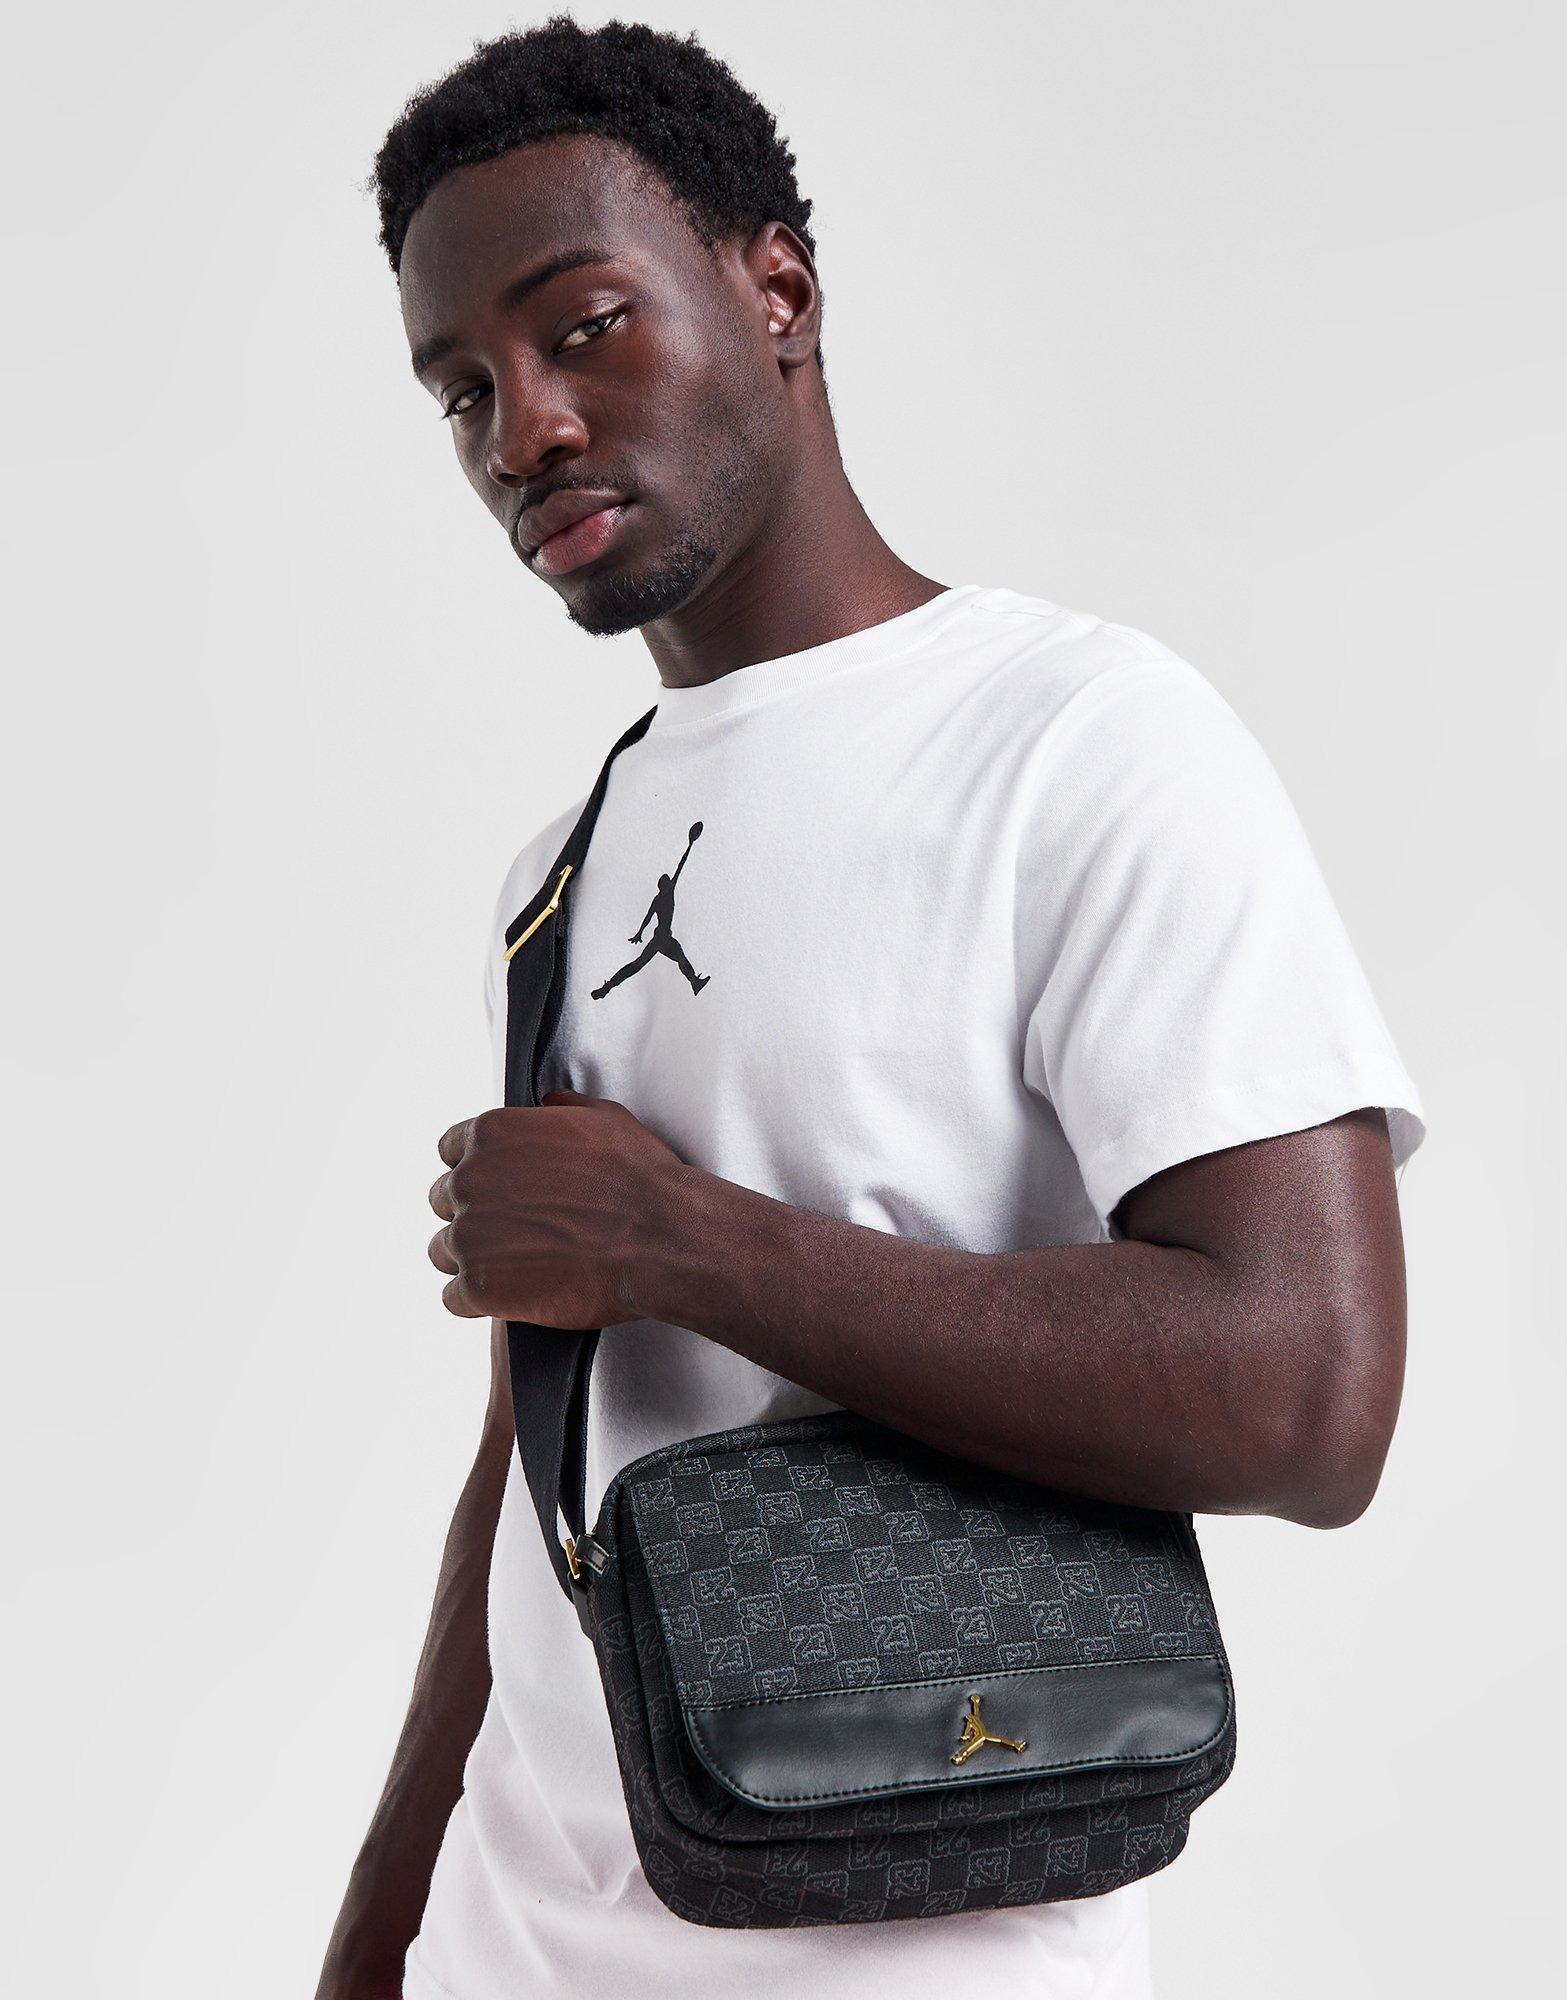 Louis Vuitton Monogram Side Strap T-Shirt, Black, Xxs